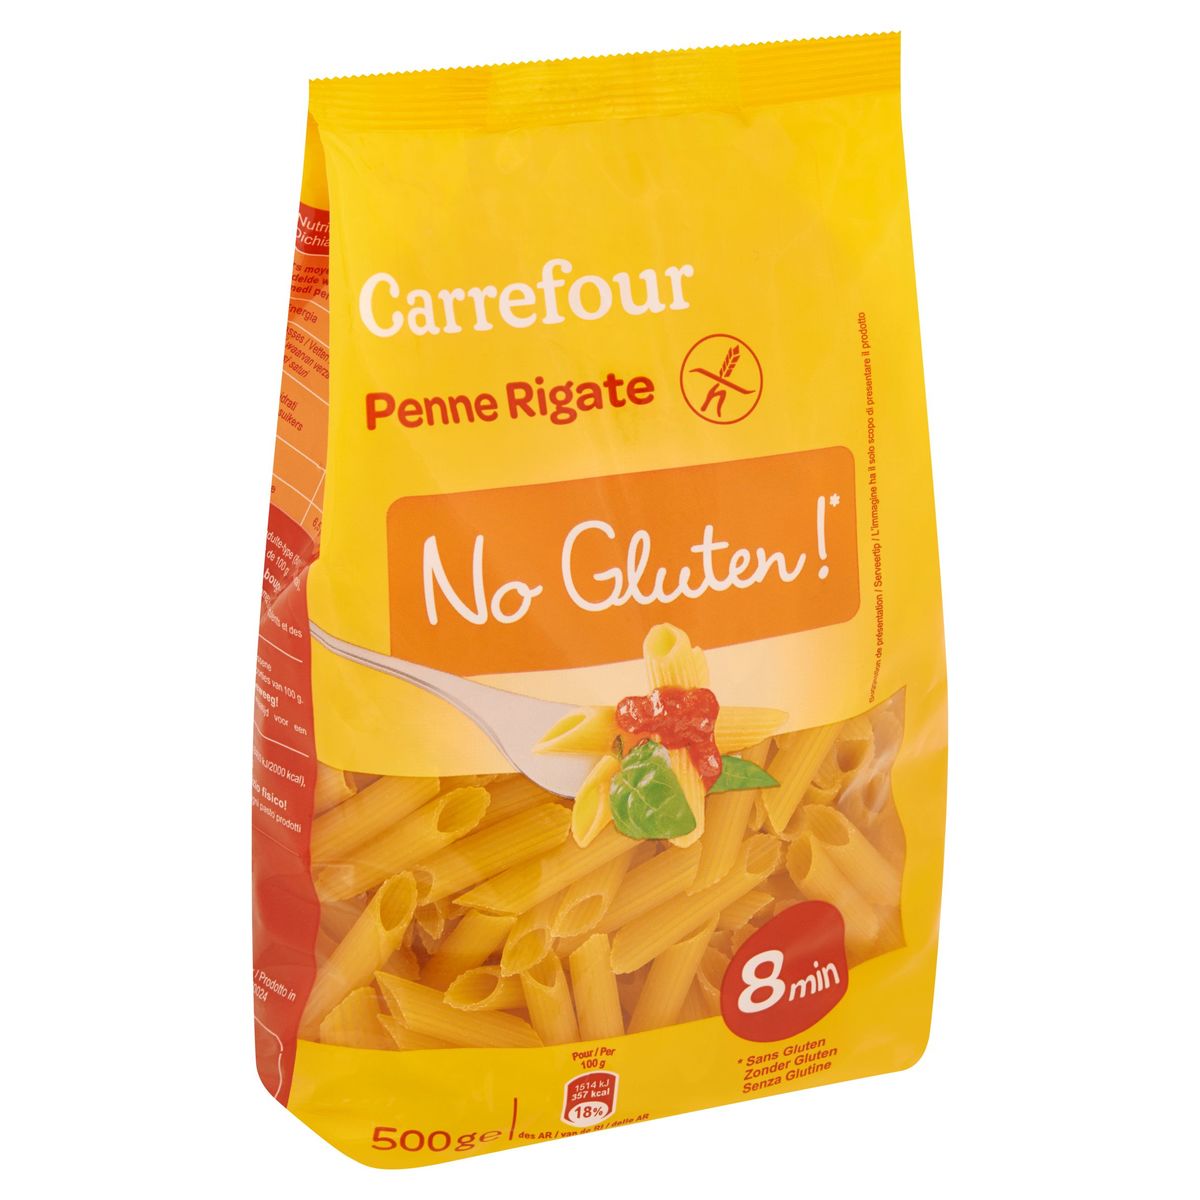 Carrefour Penne Rigate No Gluten! 500 g